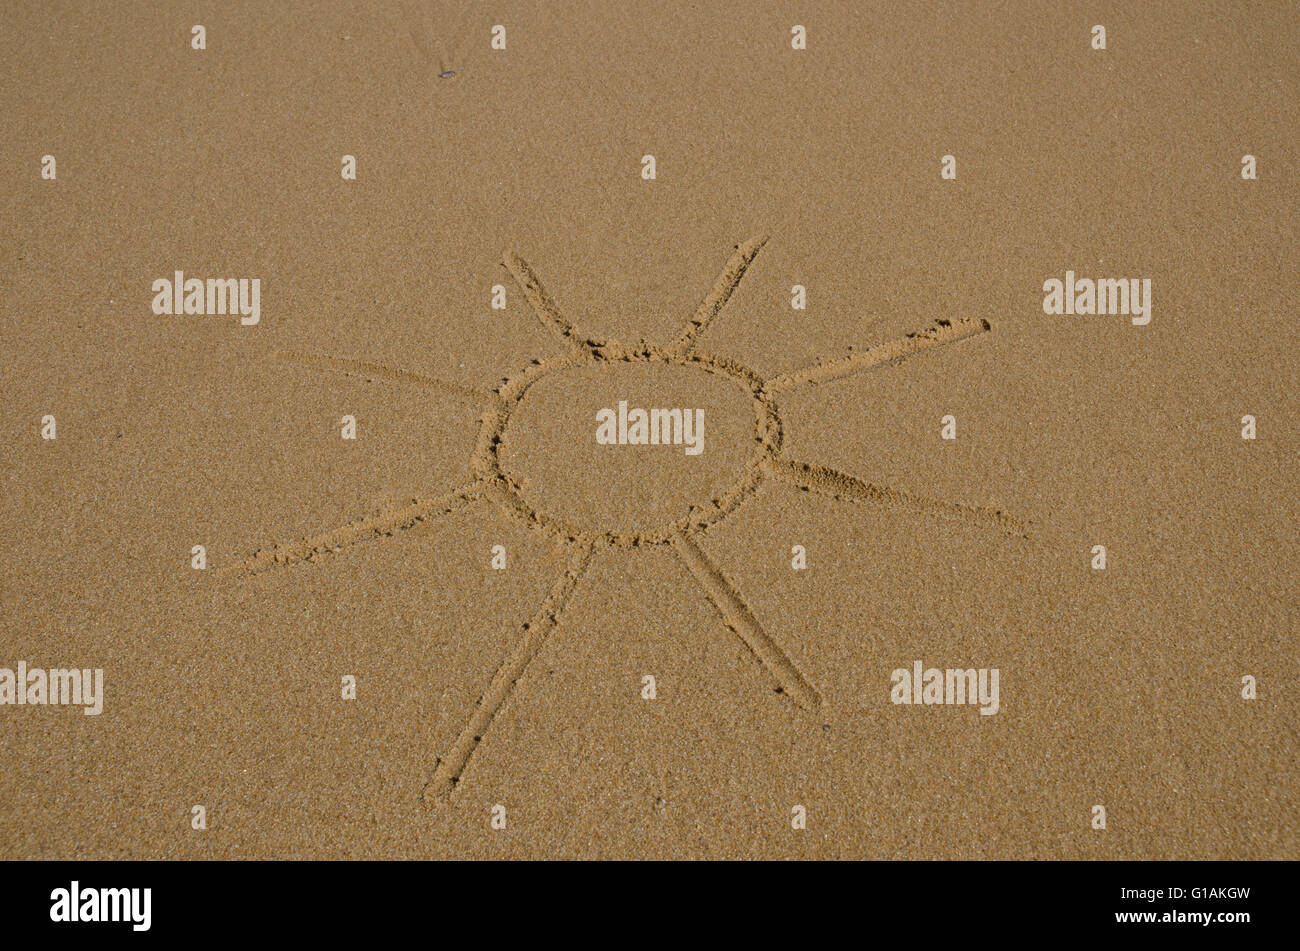 Abbildung der Sonne im nassen Sand gezeichnet Stockfoto